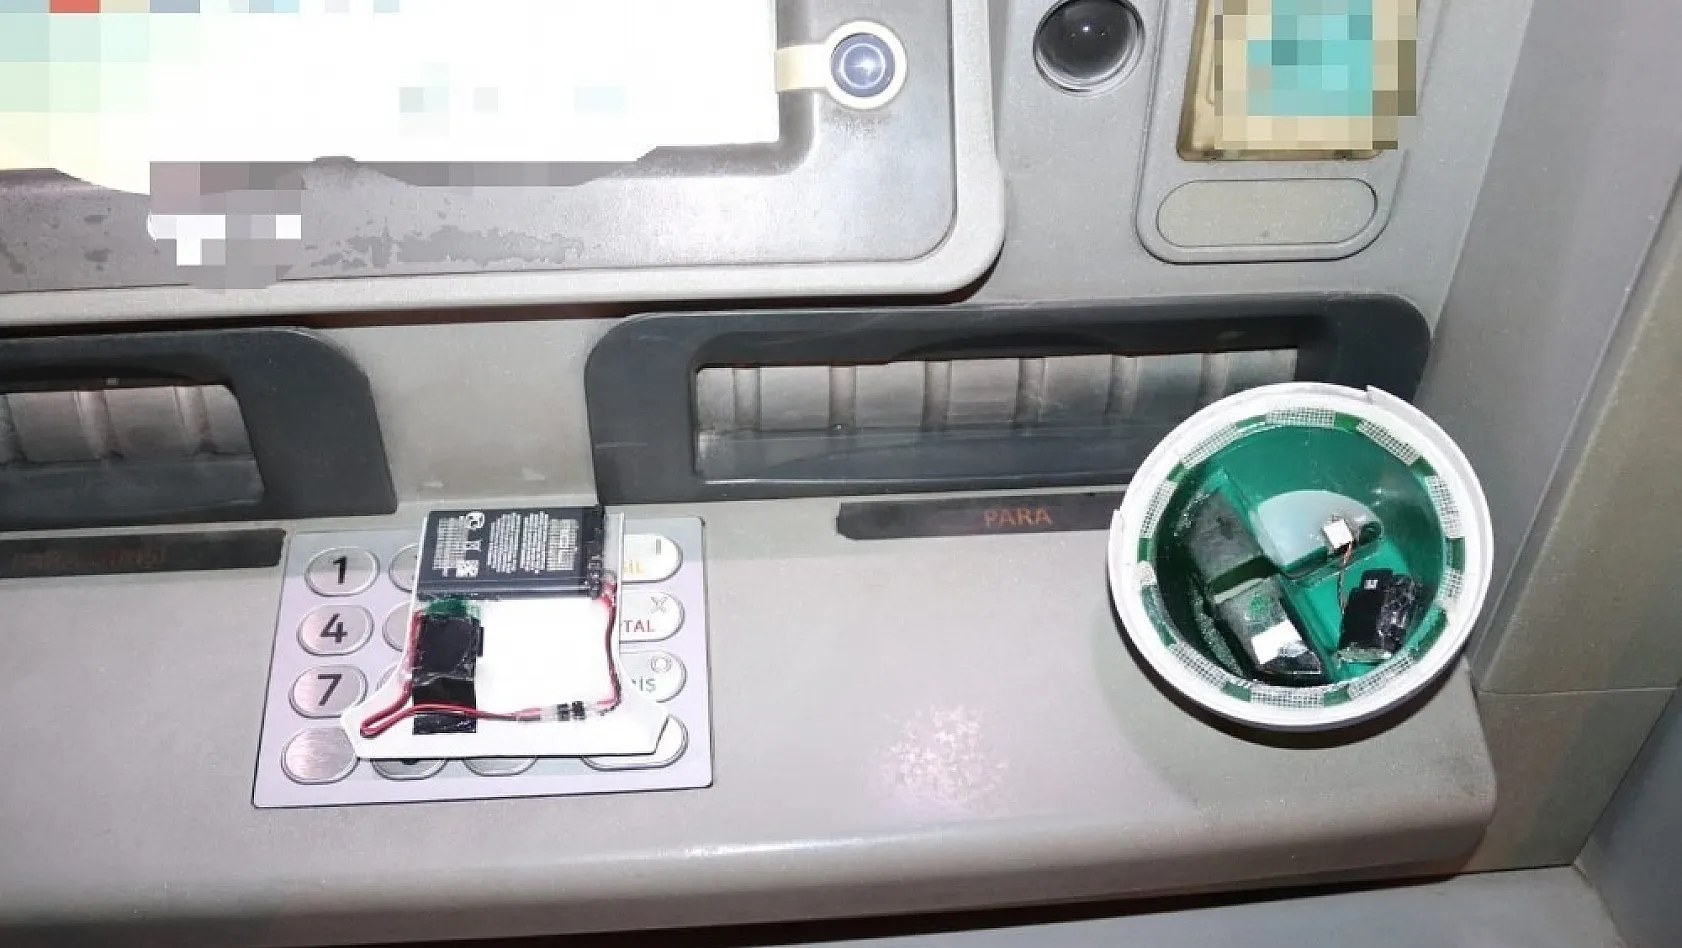 ATM'ye kart kopyalama düzeneği yerleştiren 2 kişi tutuklandı 